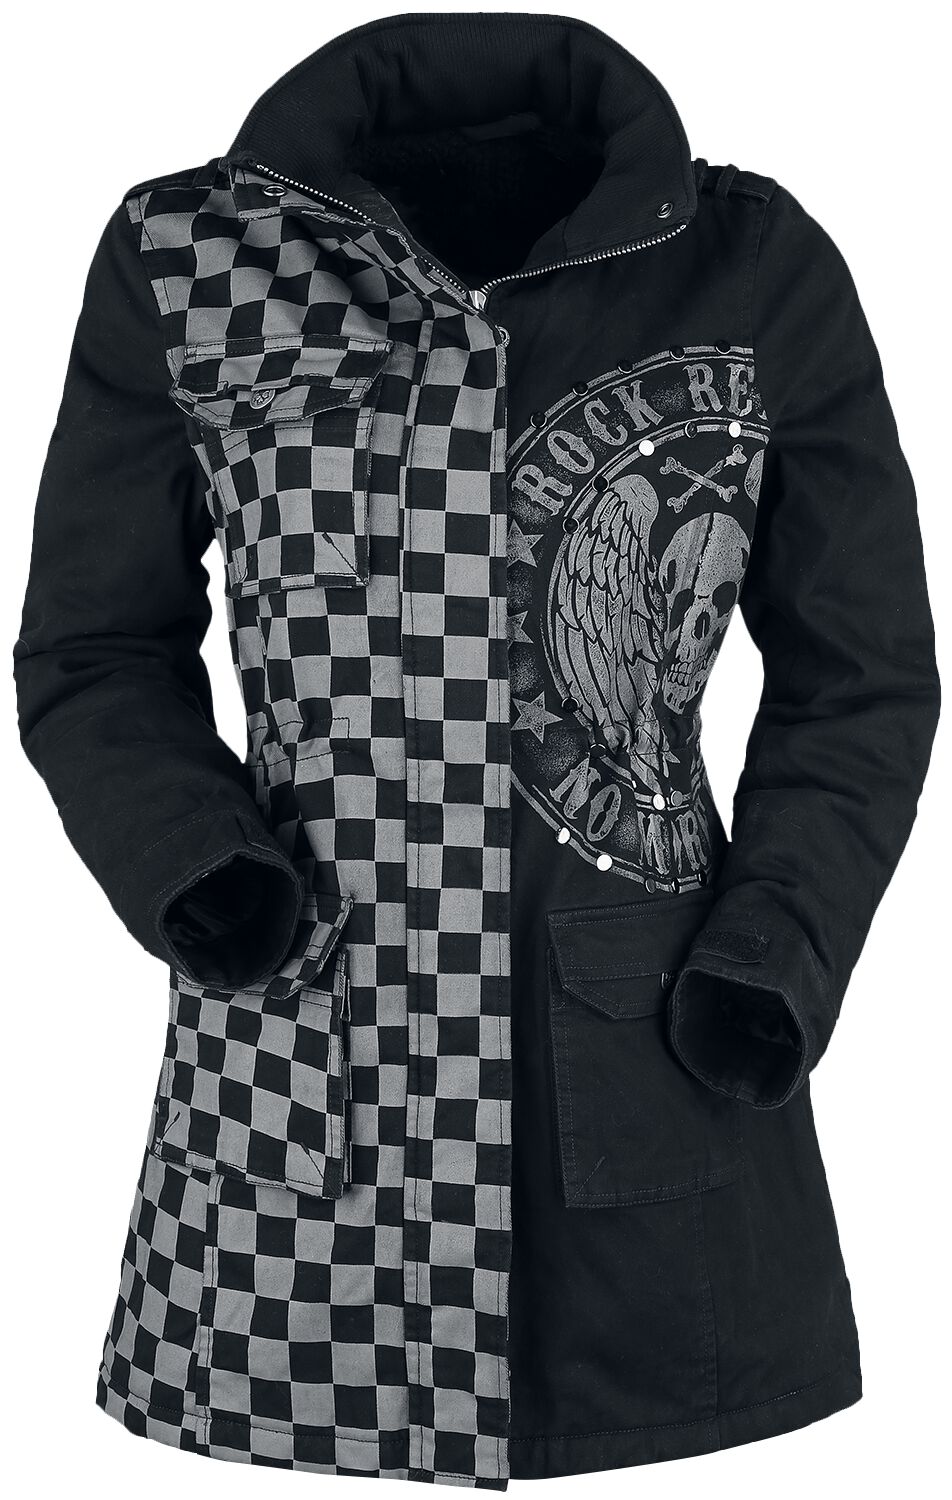 Rock Rebel by EMP - Rock Winterjacke - schwarz/graue Jacke mit Nieten und Print - S bis XXL - für Damen - Größe XXL - grau/schwarz